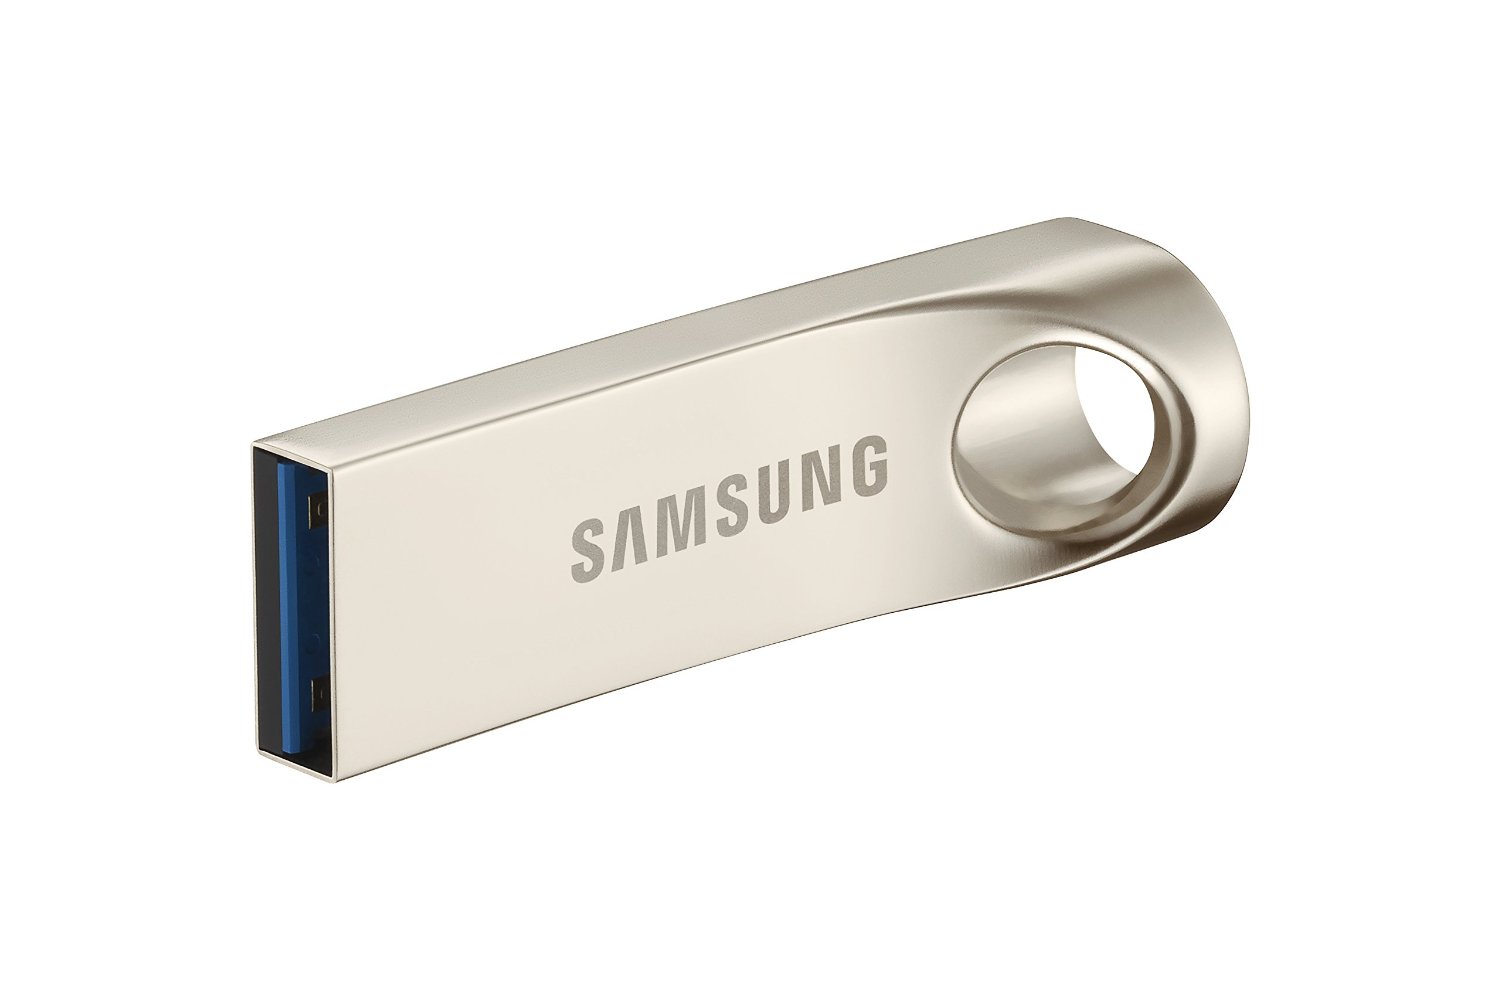 Samsung Flash Drive